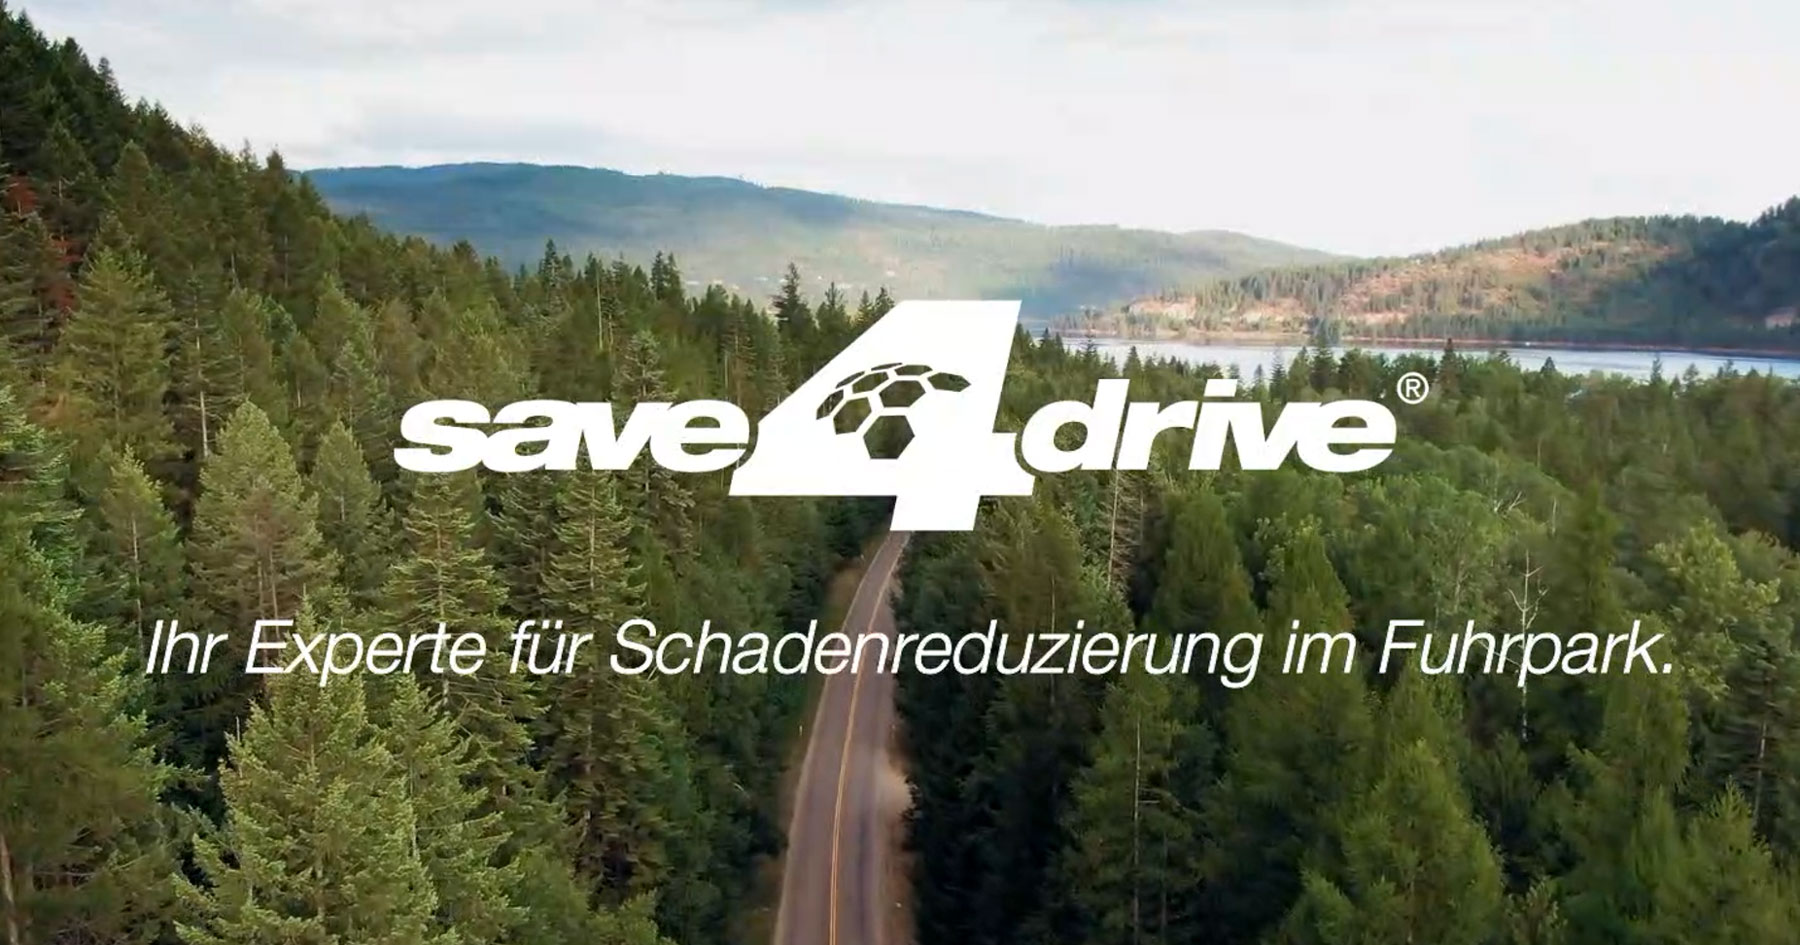 (c) Save4drive.com